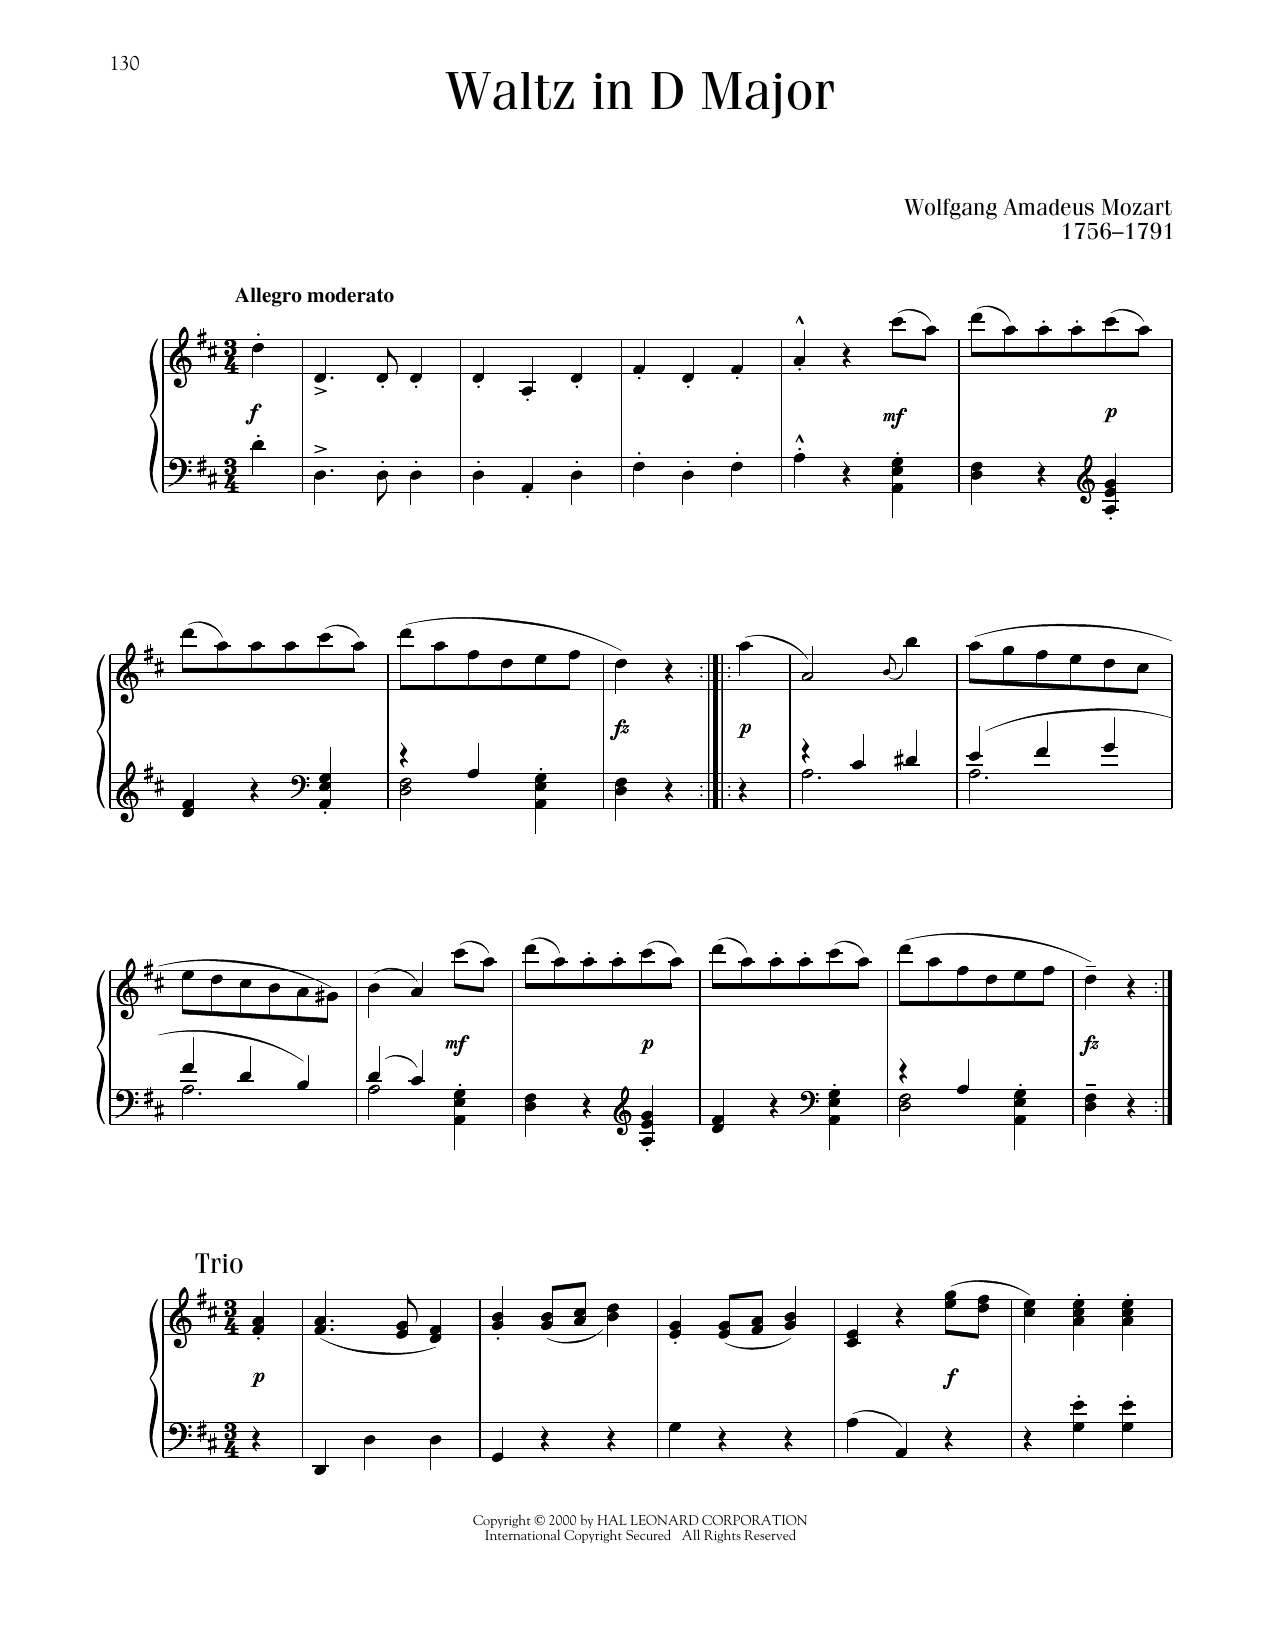 Wolfgang Amadeus Mozart Waltz In D Major sheet music notes printable PDF score